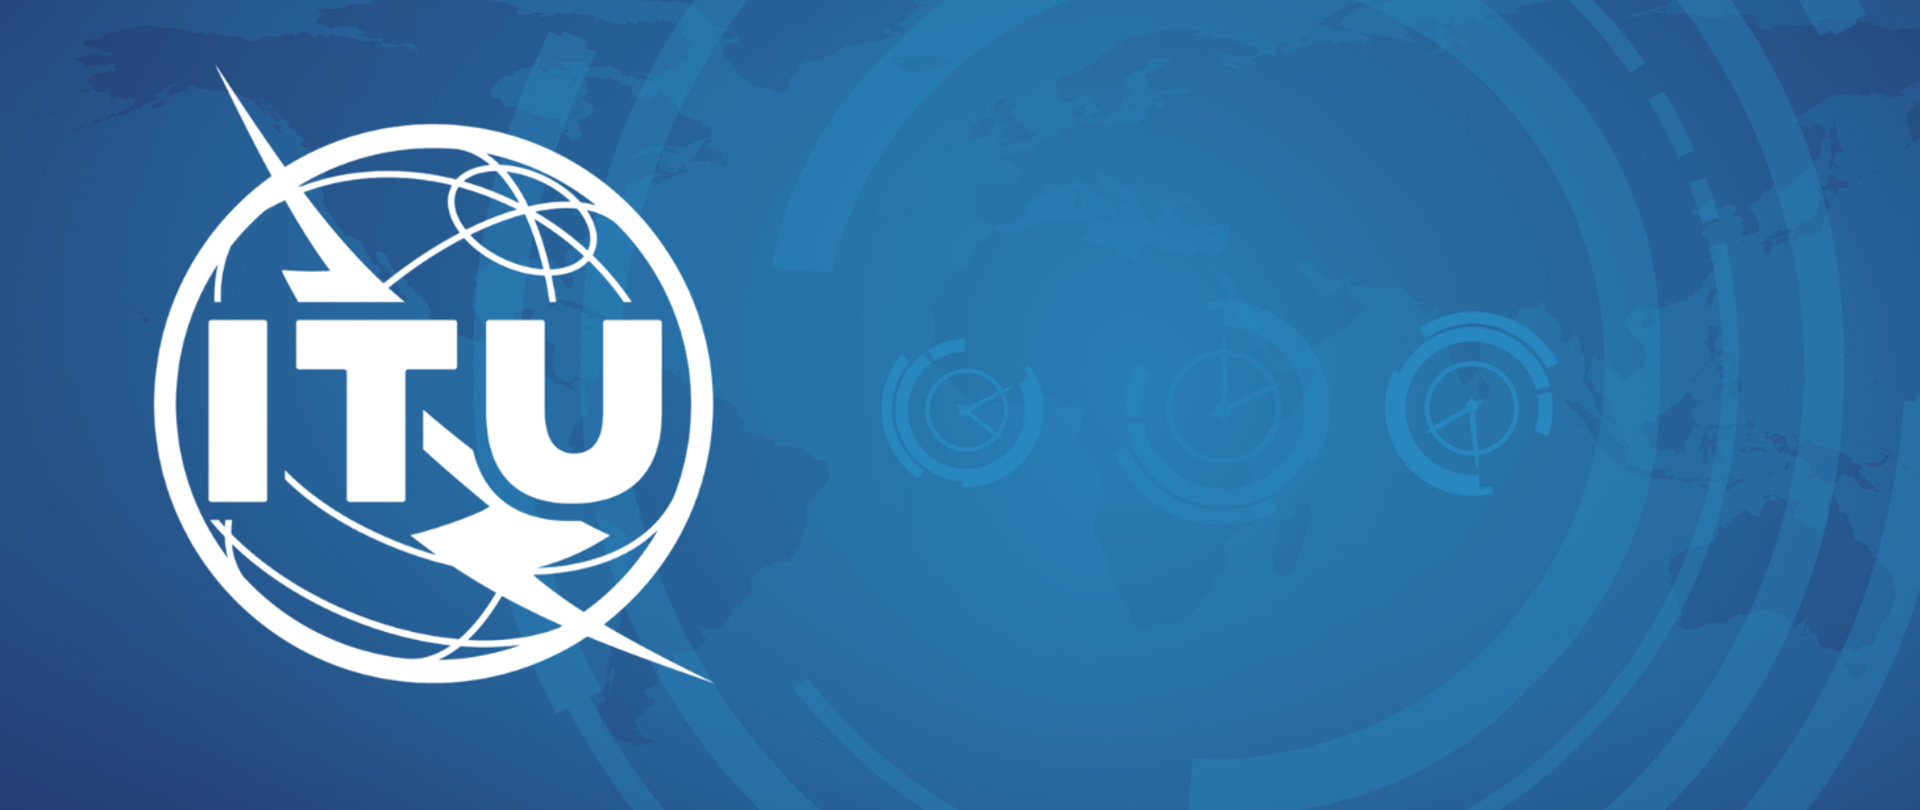 Białe logo ITU na niebieskim tle. Z tyłu widoczne trzy tarcze zegarowe i mapa świata.